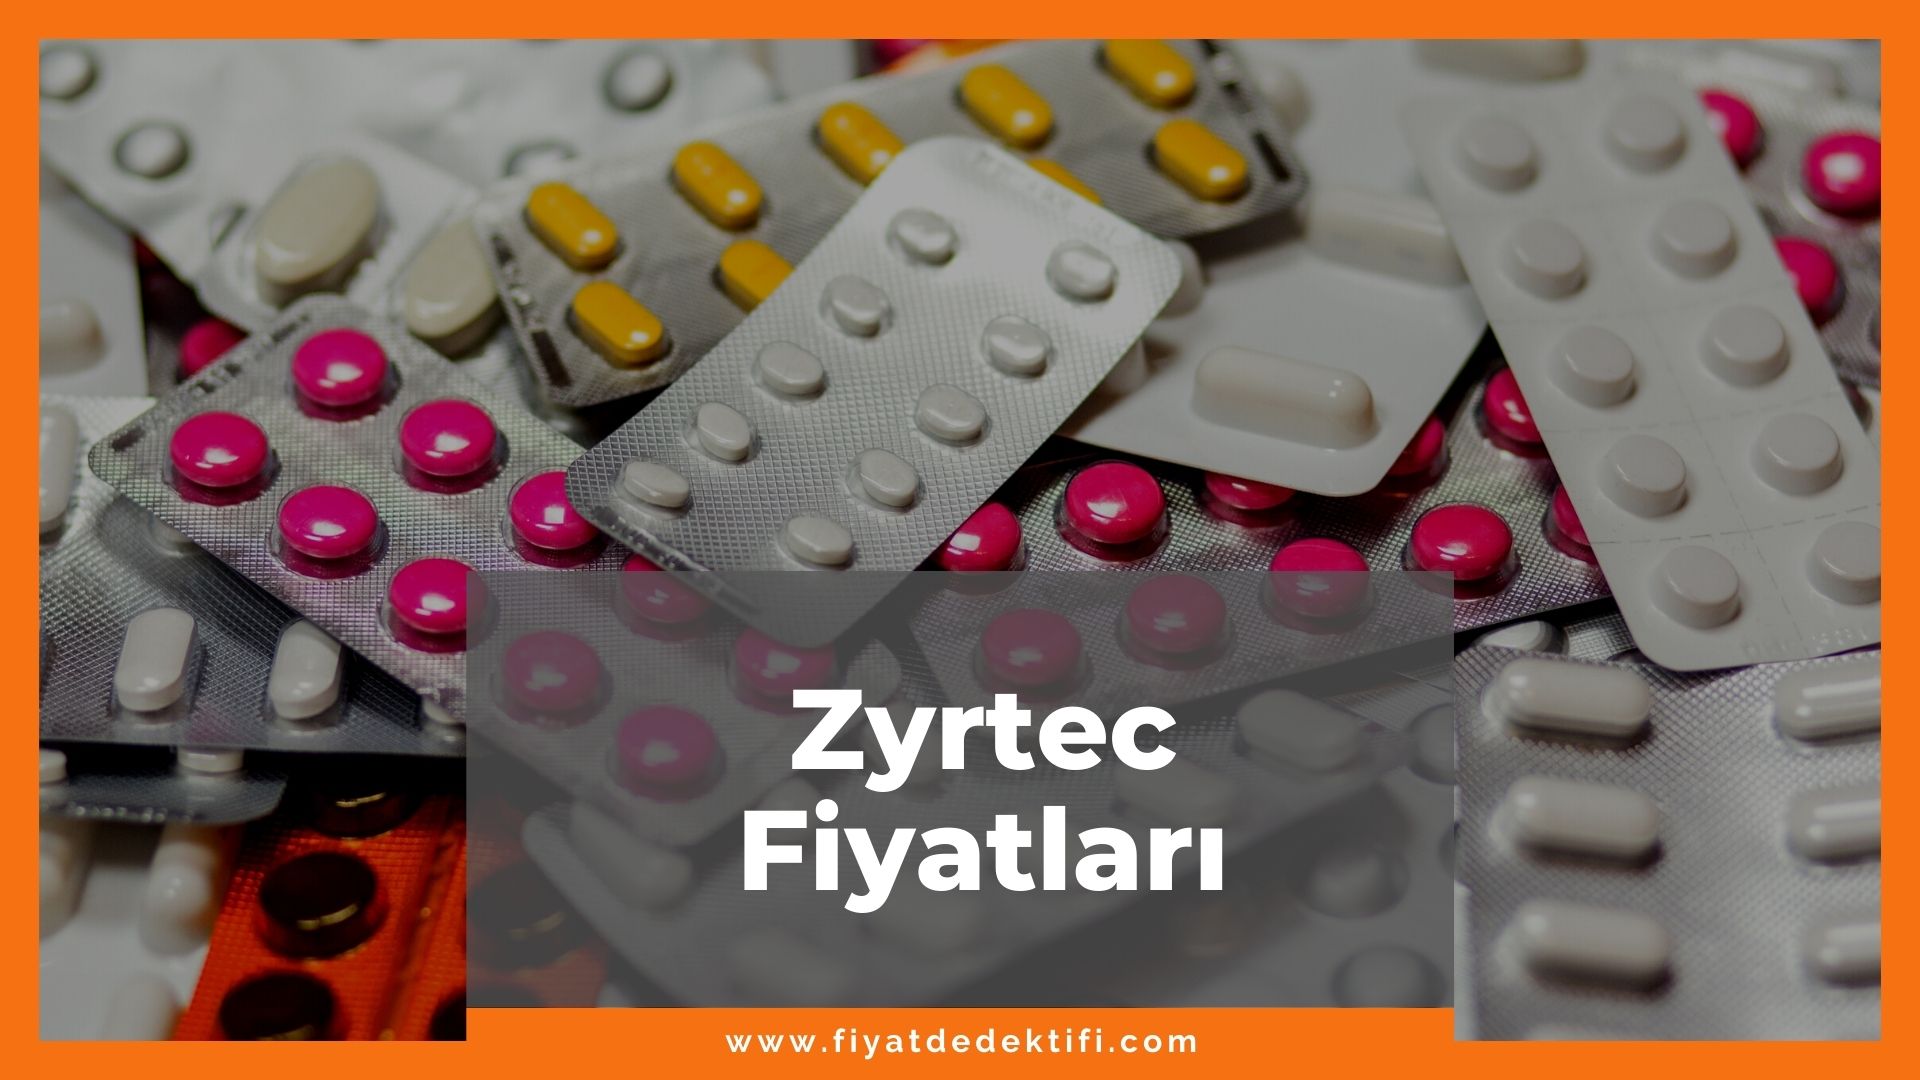 Zyrtec Fiyat 2021, Zyrtec Tablet Fiyatı, Zyrtec Hap 20 mg Fiyatı, zyrtec zamlandı mı, zyrtec zamlı fiyatı ne kadar oldu